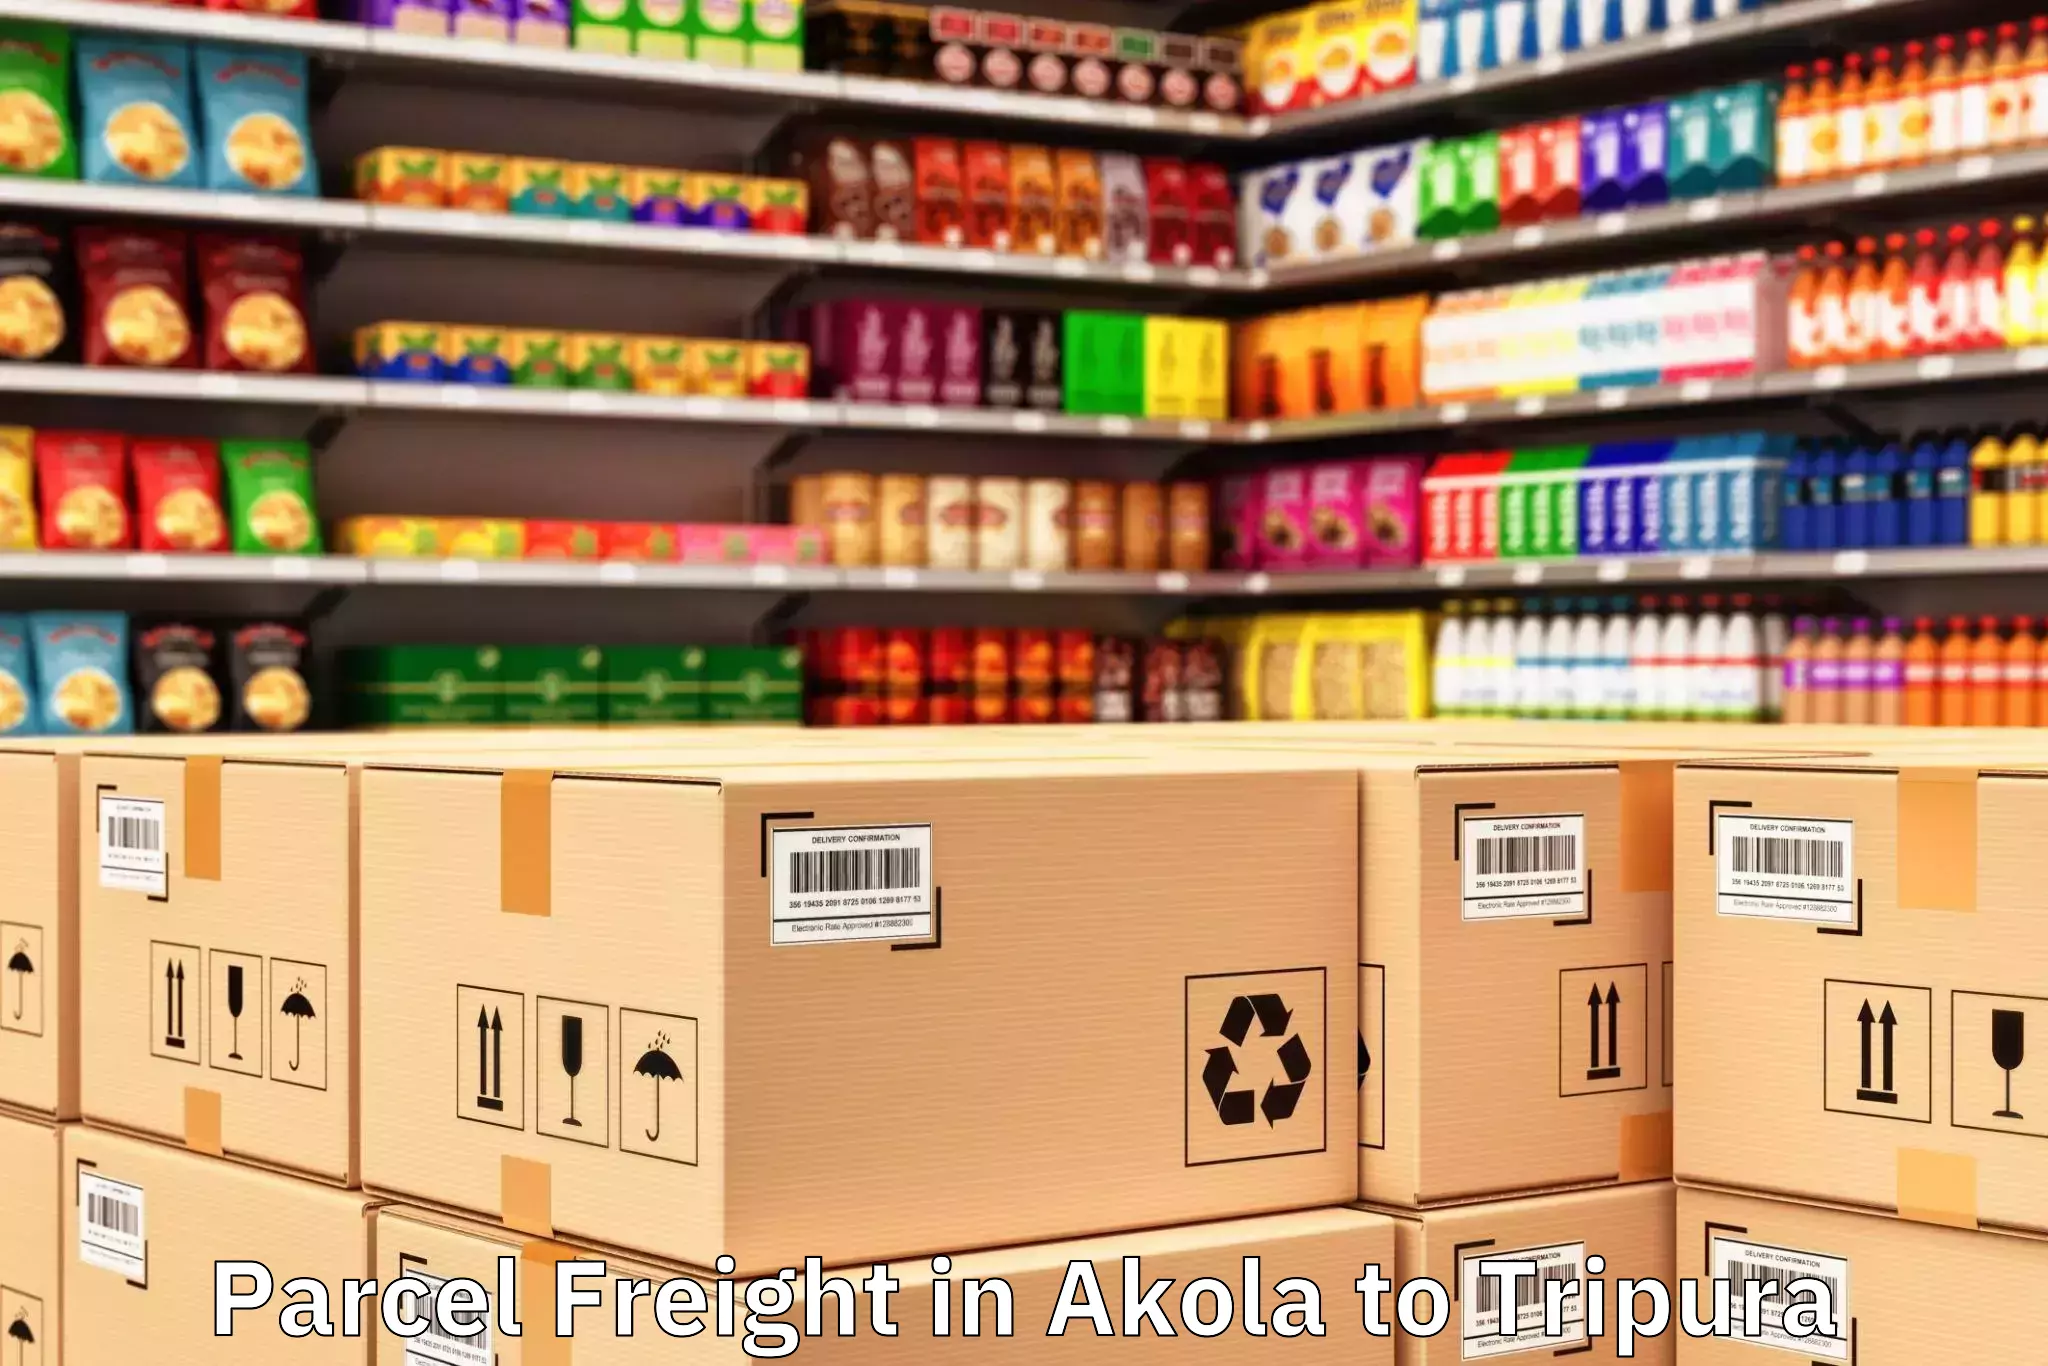 Efficient Akola to Tripura Parcel Freight